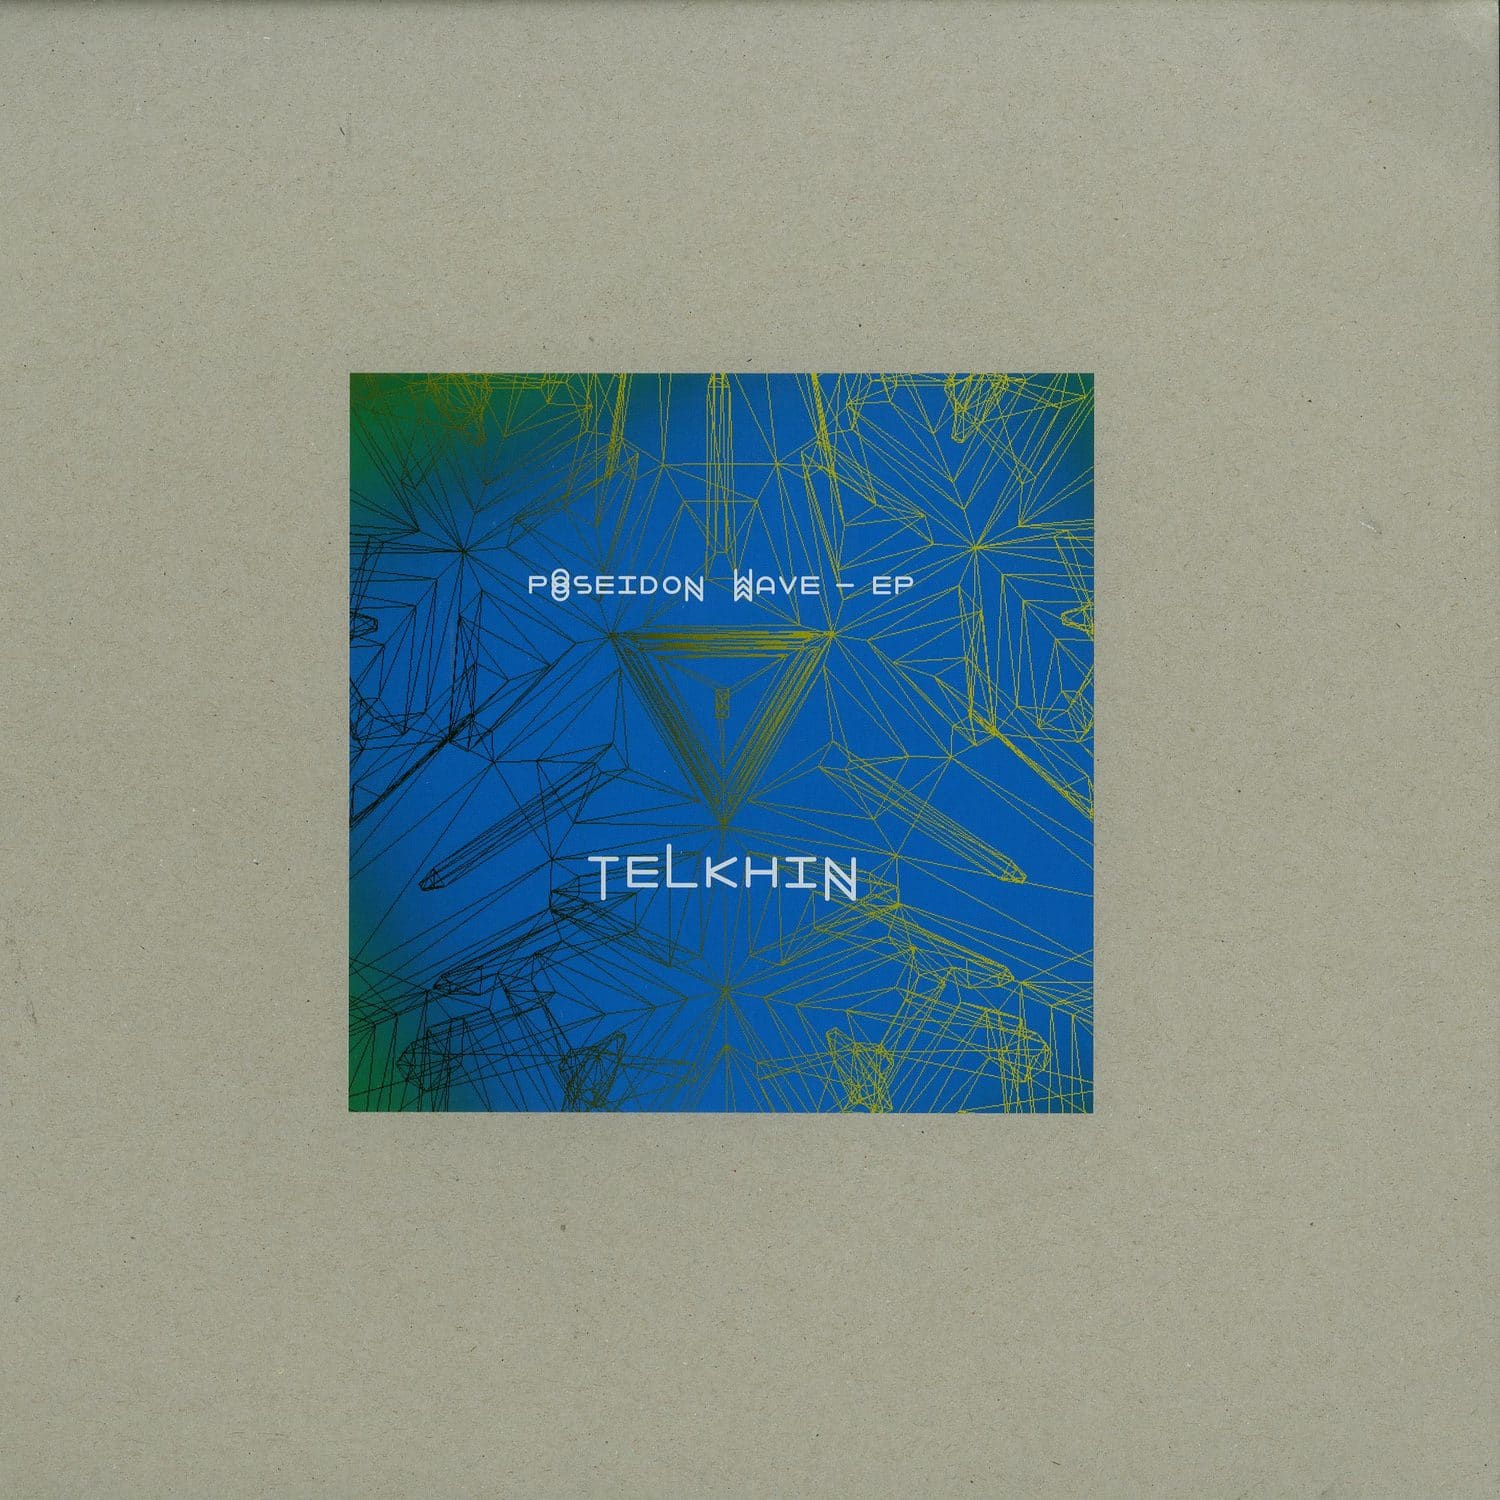 Telkhin - POSEIDON WAVE EP